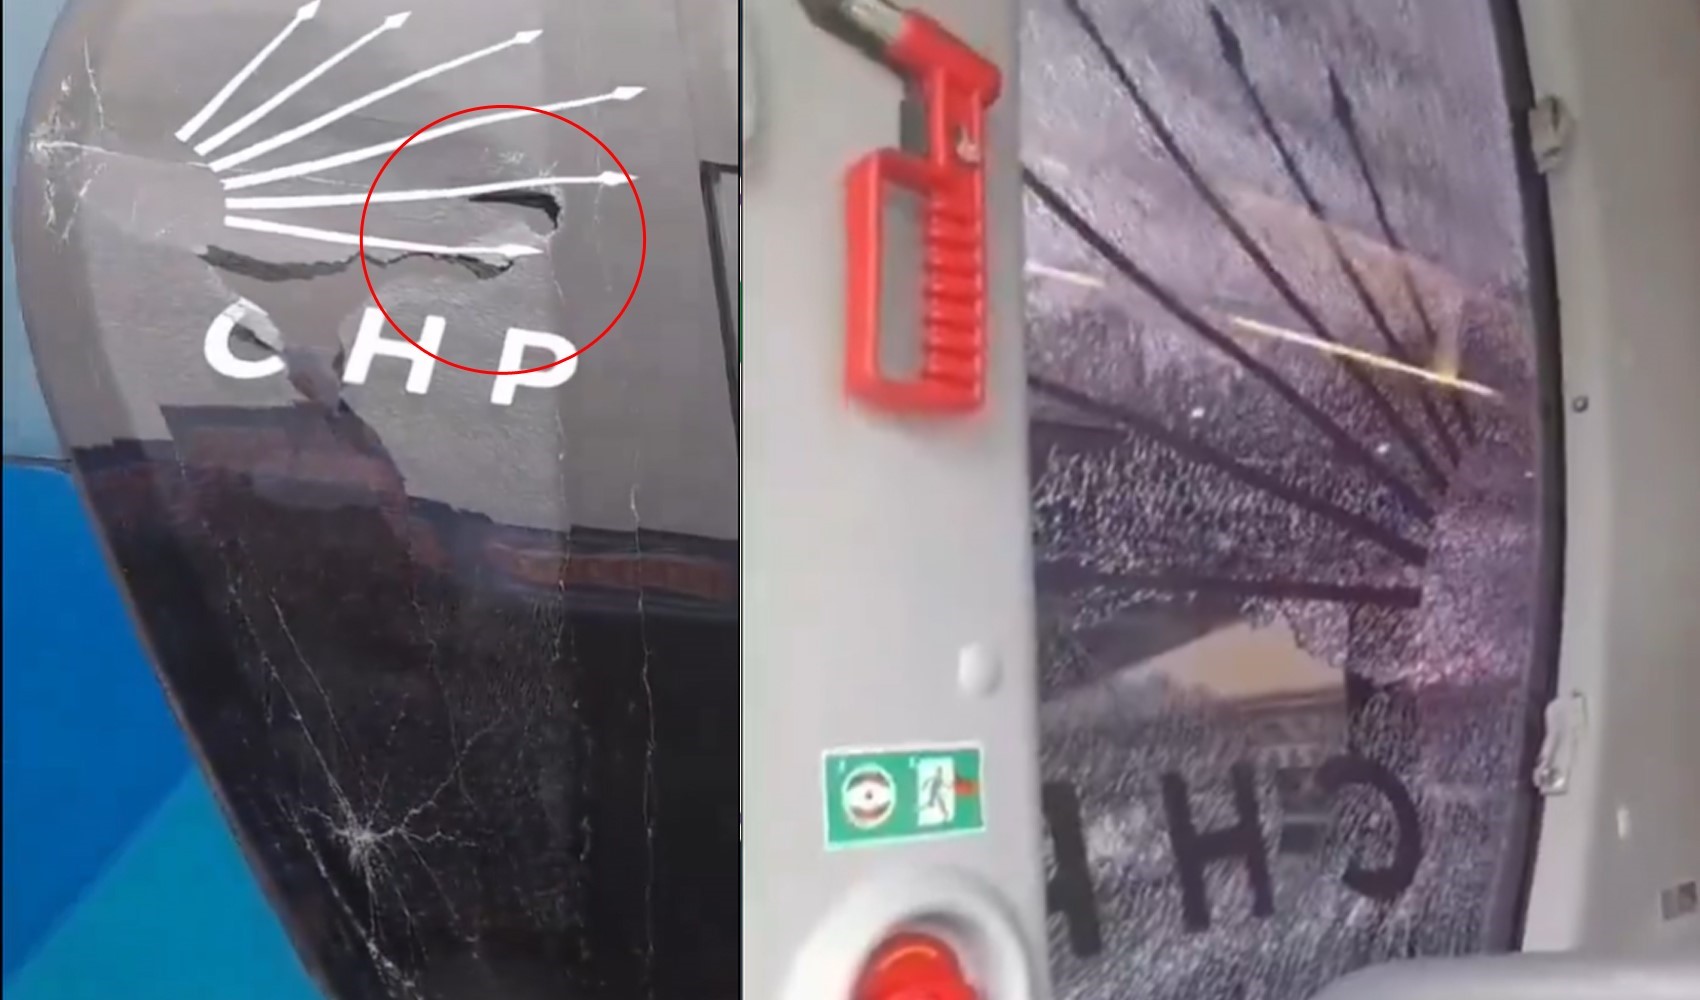 Trabzon'da CHP otobüsüne taşlı saldırı!